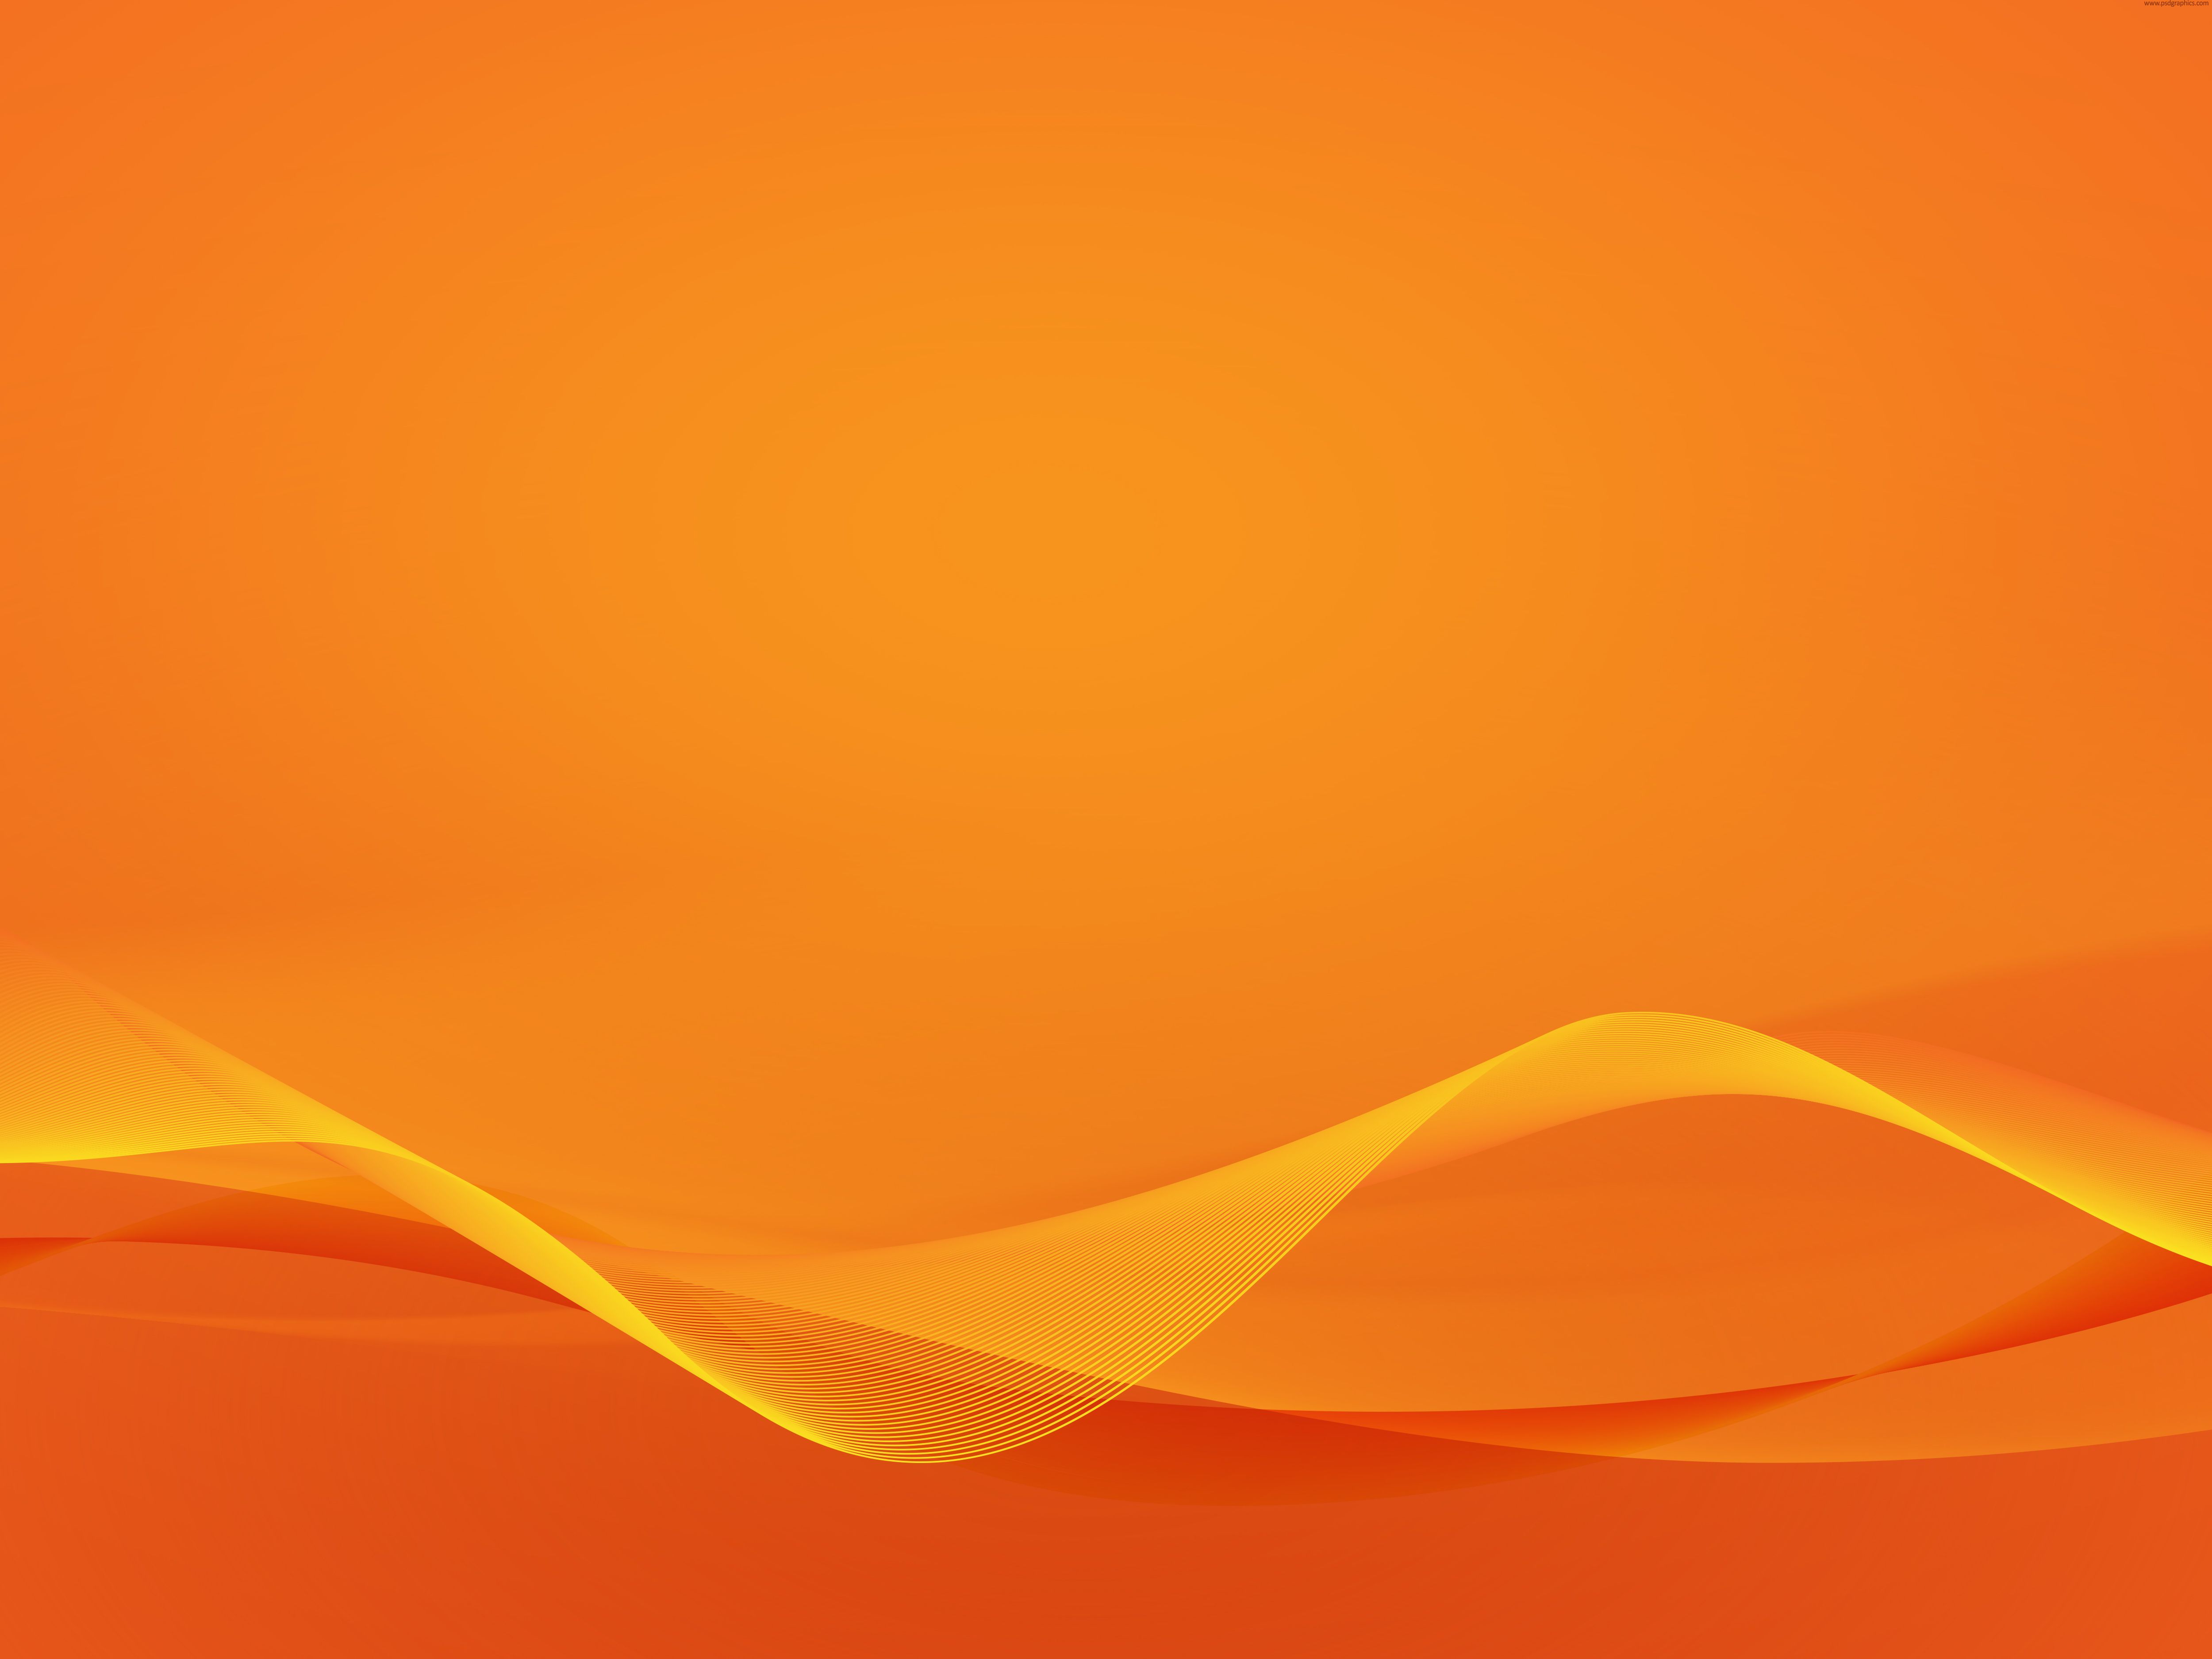 Free Download Orange Background Design Canasbergdorfbibco 5000x3750 For Your Desktop Mobile Tablet Explore 18 A Orange Background A Orange Background A Clockwork Orange Wallpapers Orange Wallpapers